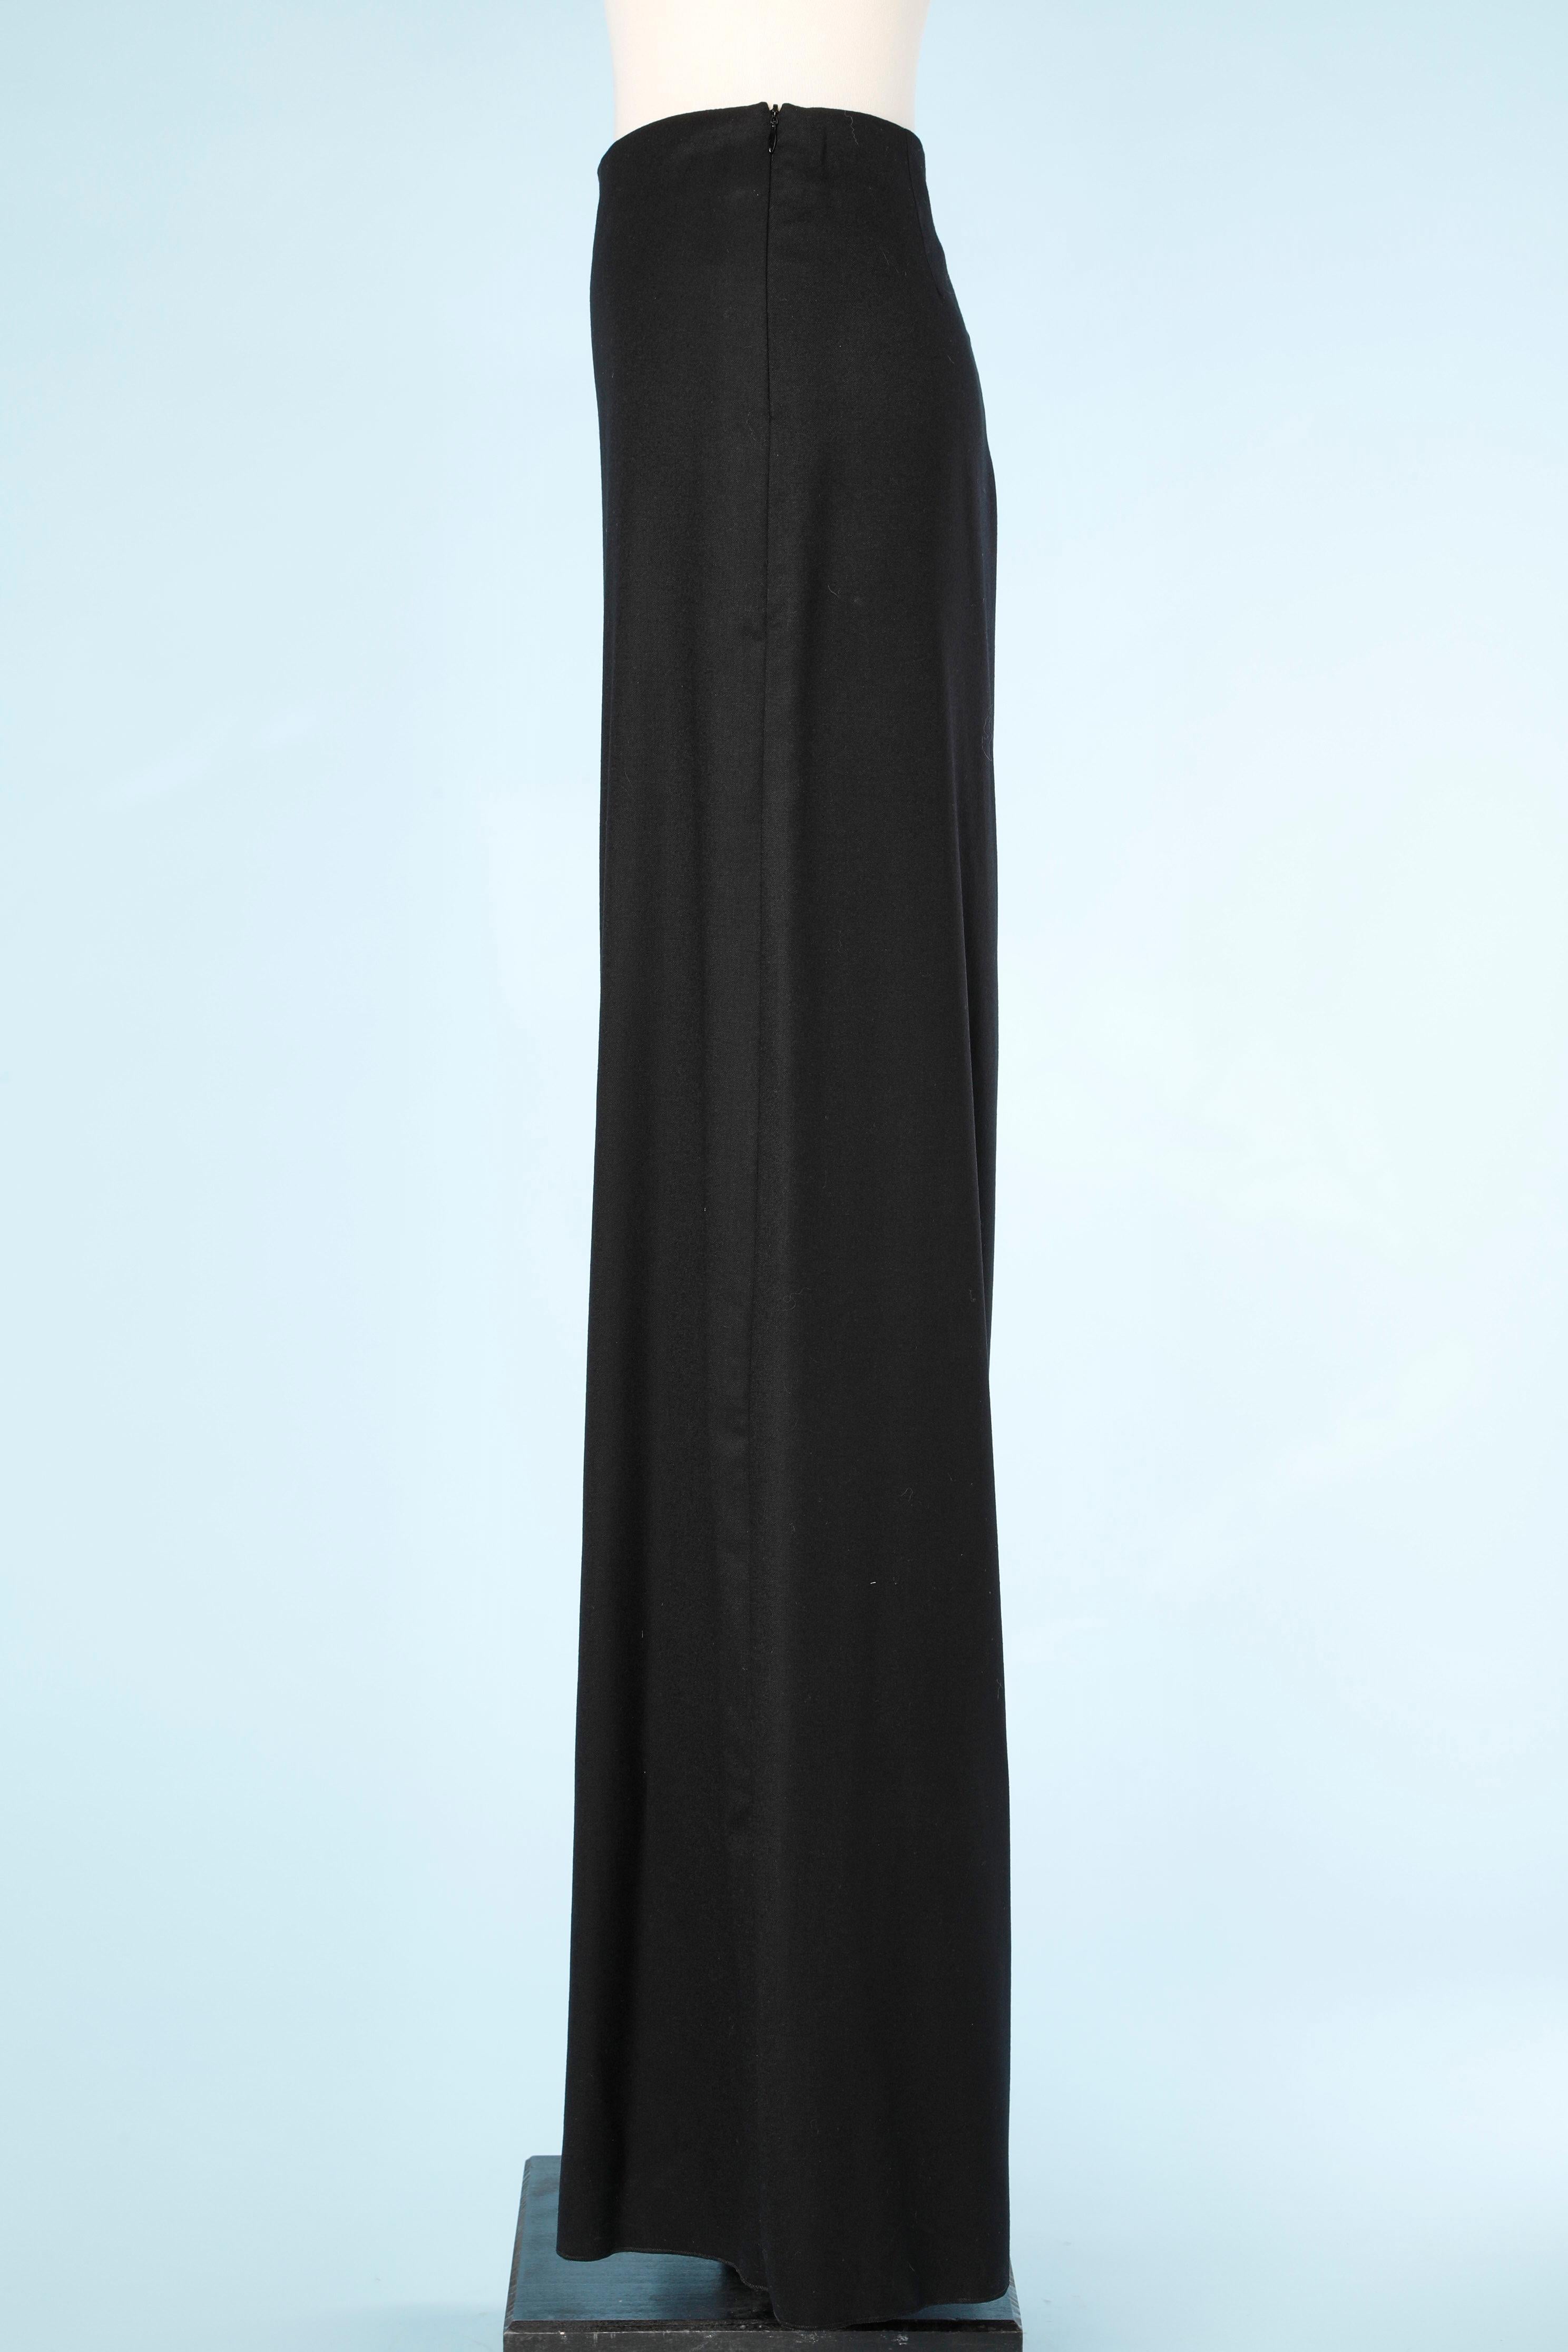 Schwarze Hose mit weitem Bein aus Wolle. Reißverschluss auf der linken Seite. Seidenfutter. Unterer Durchmesser an jedem Bein = 74 cm
GRÖSSE 40 (Fr) 10 (US) L 